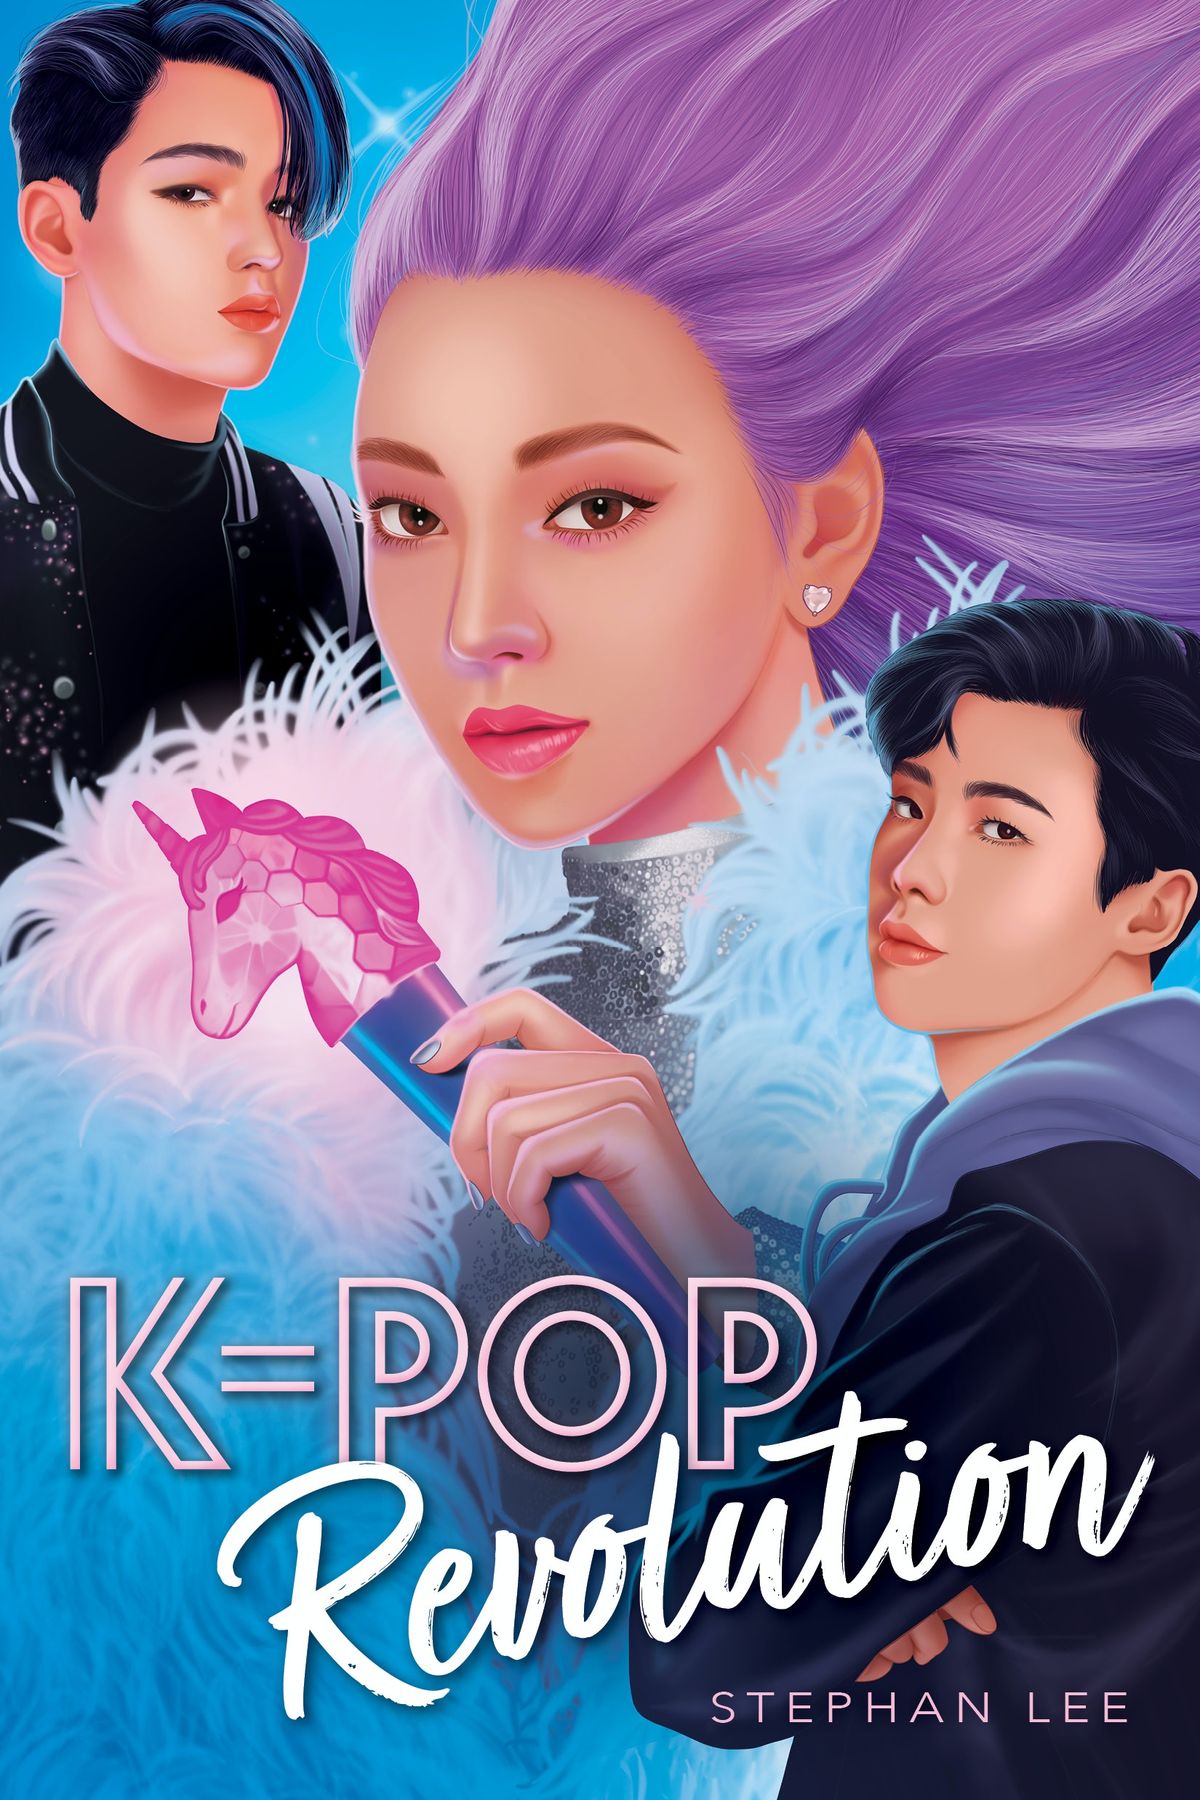 Prvi pogled na K-Pop povjerljivi nastavak Stephana Leeja, K-Pop Revolution